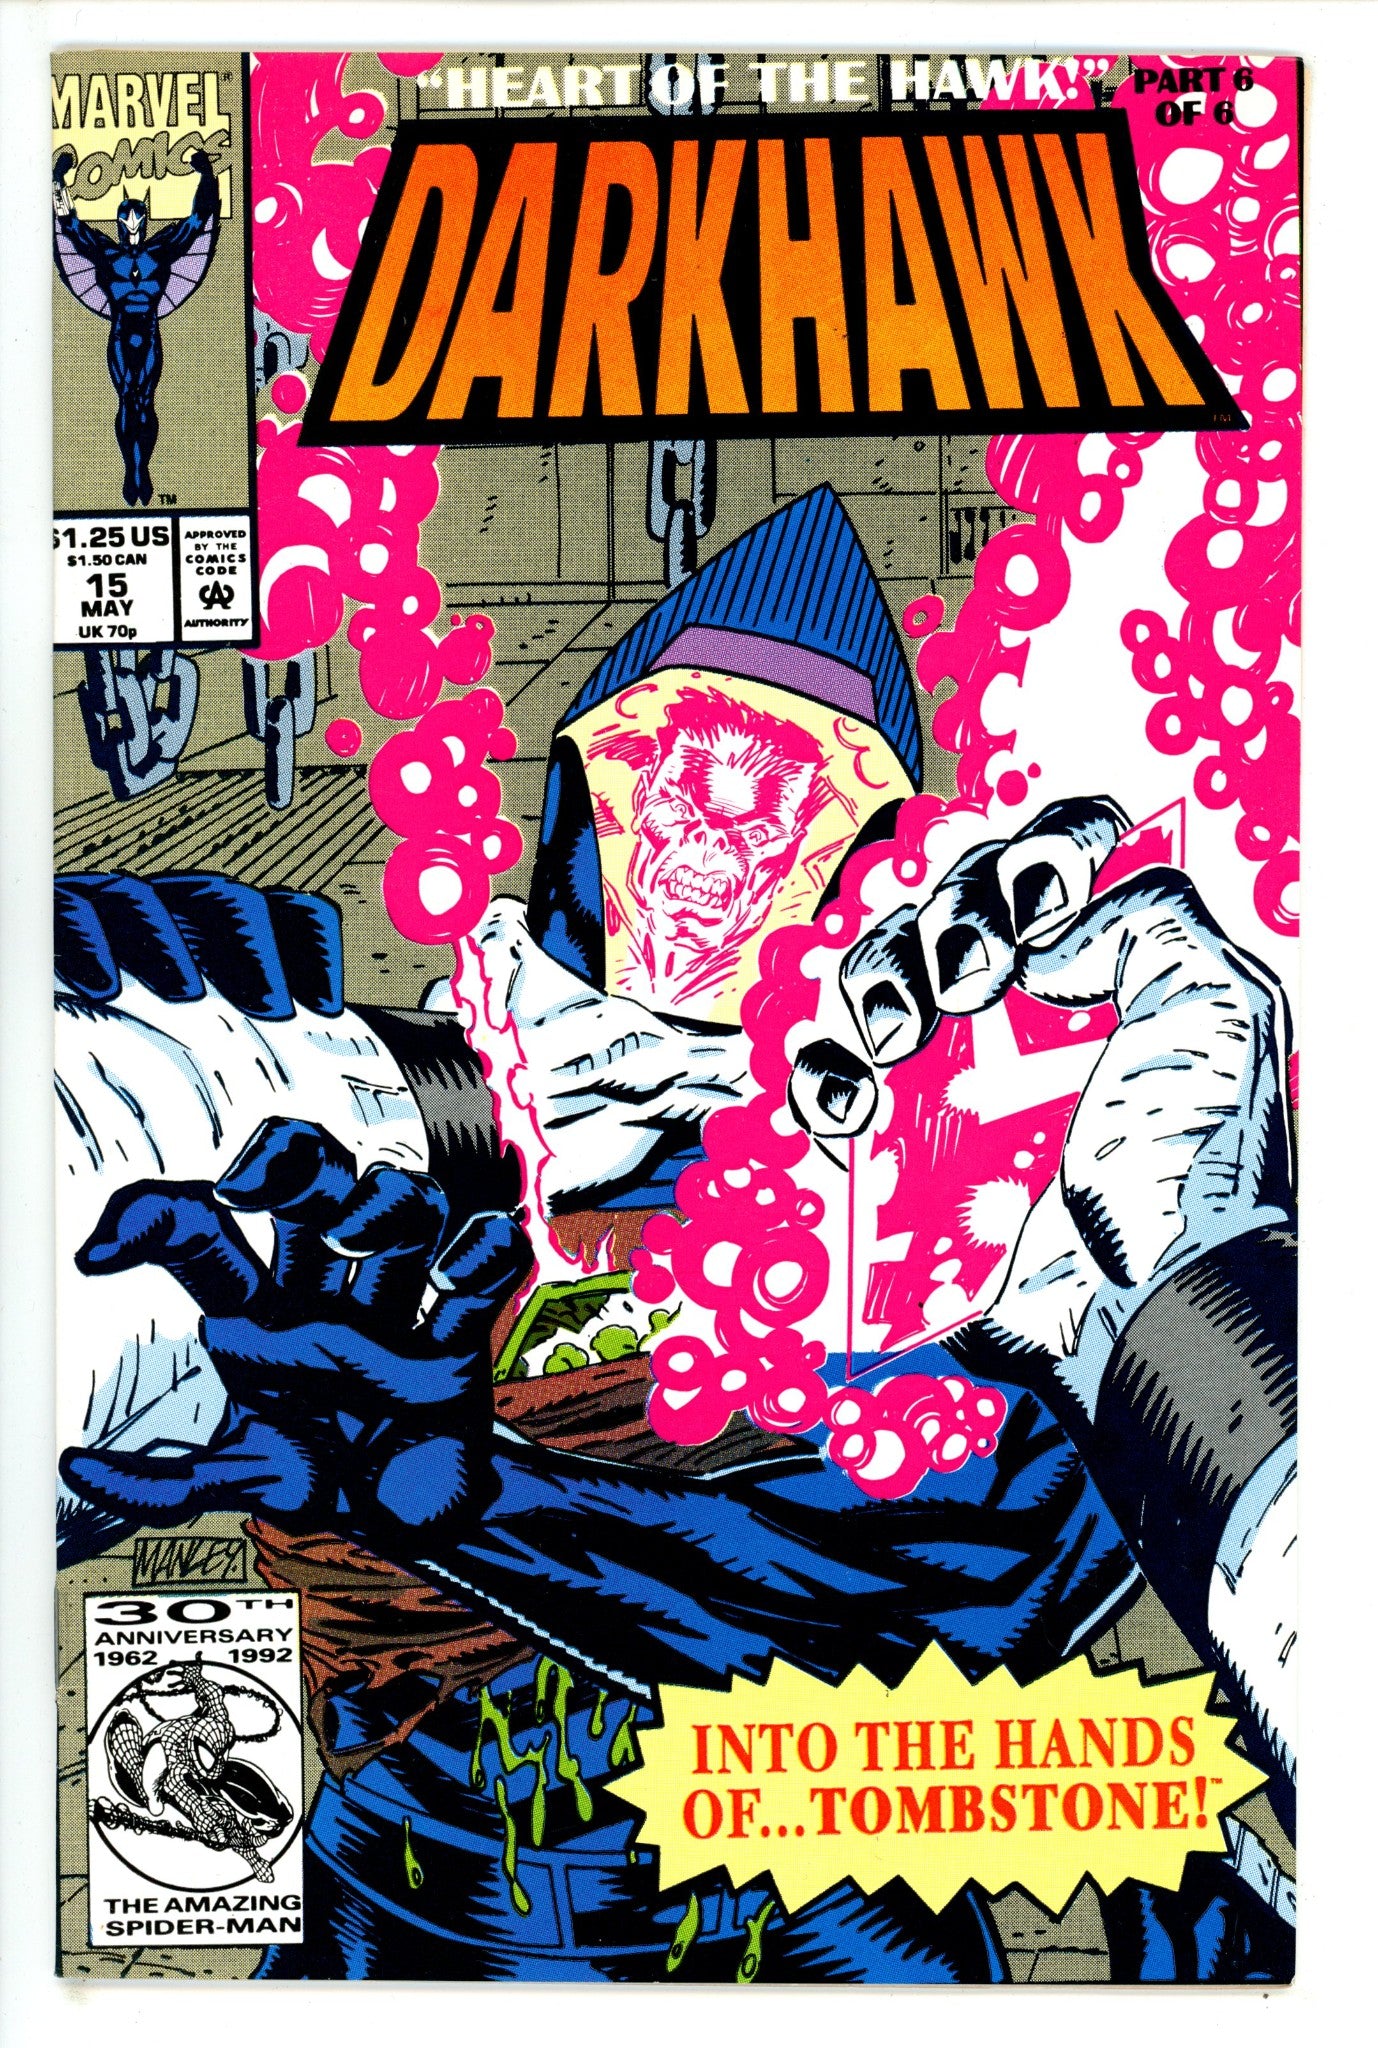 Darkhawk Vol 1 15 (1992)